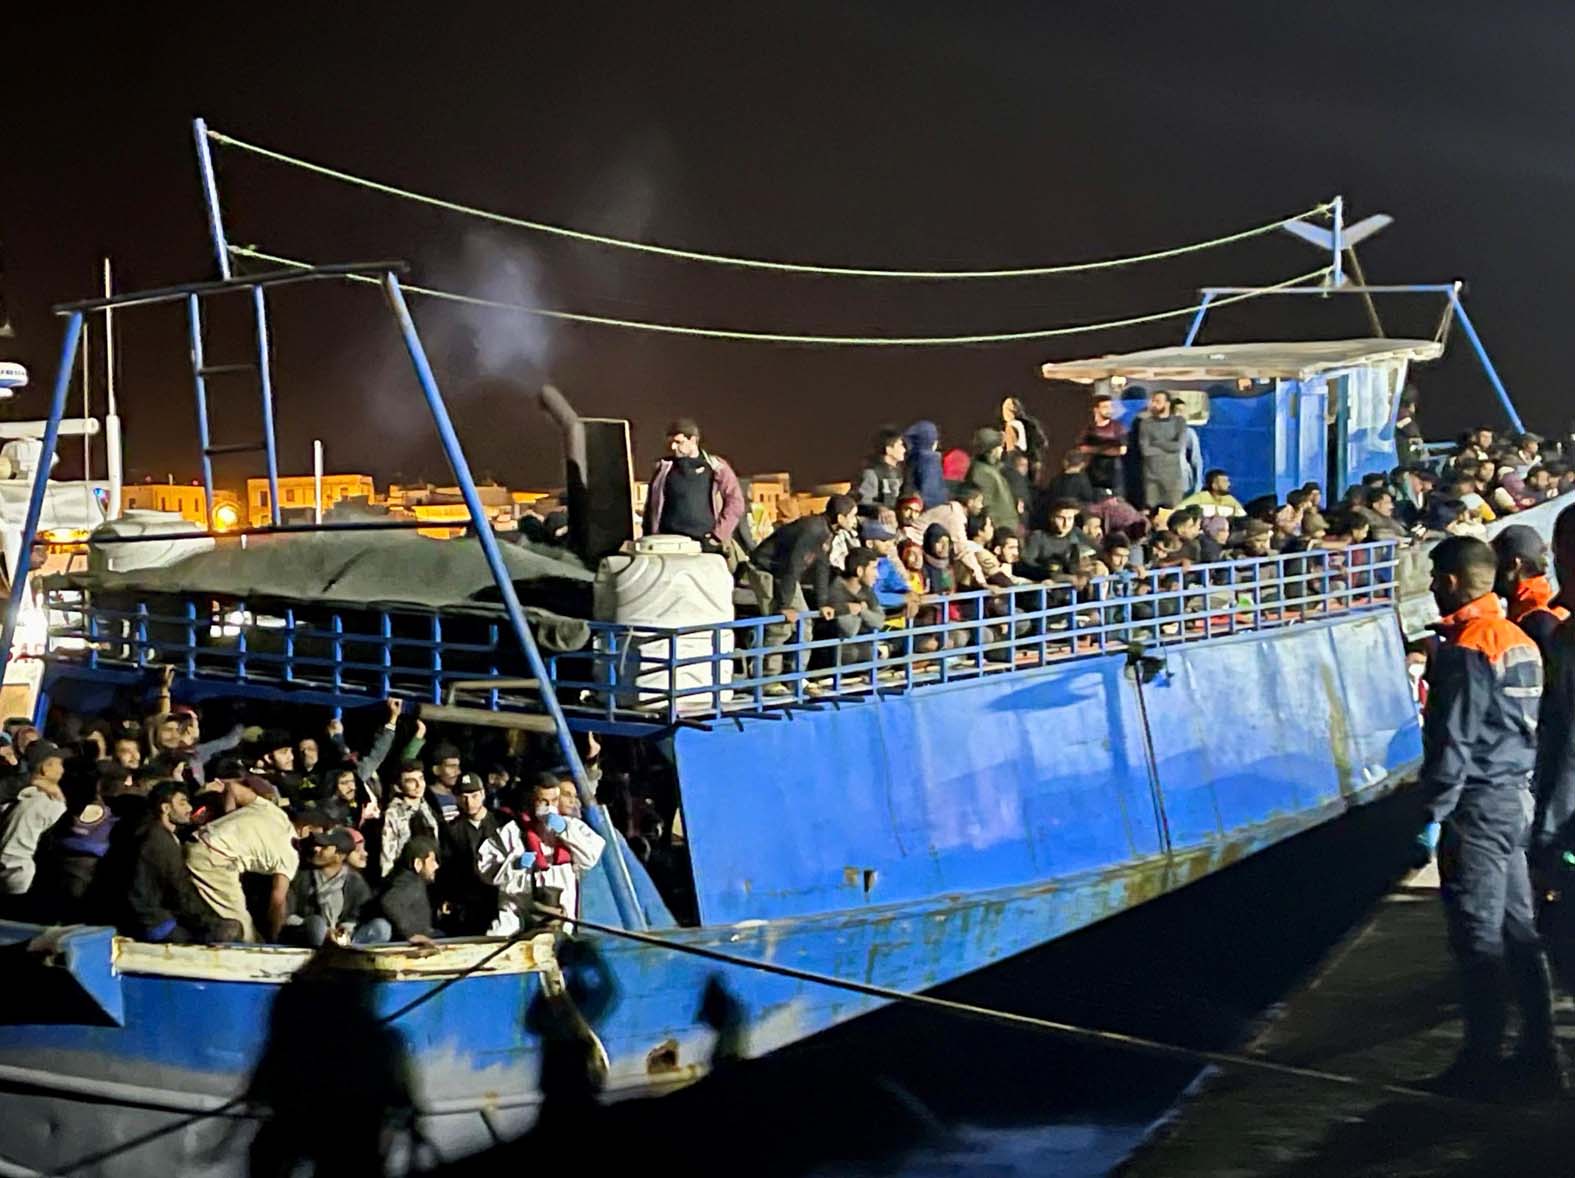 Around 400 migrants dock on Lampedusa island